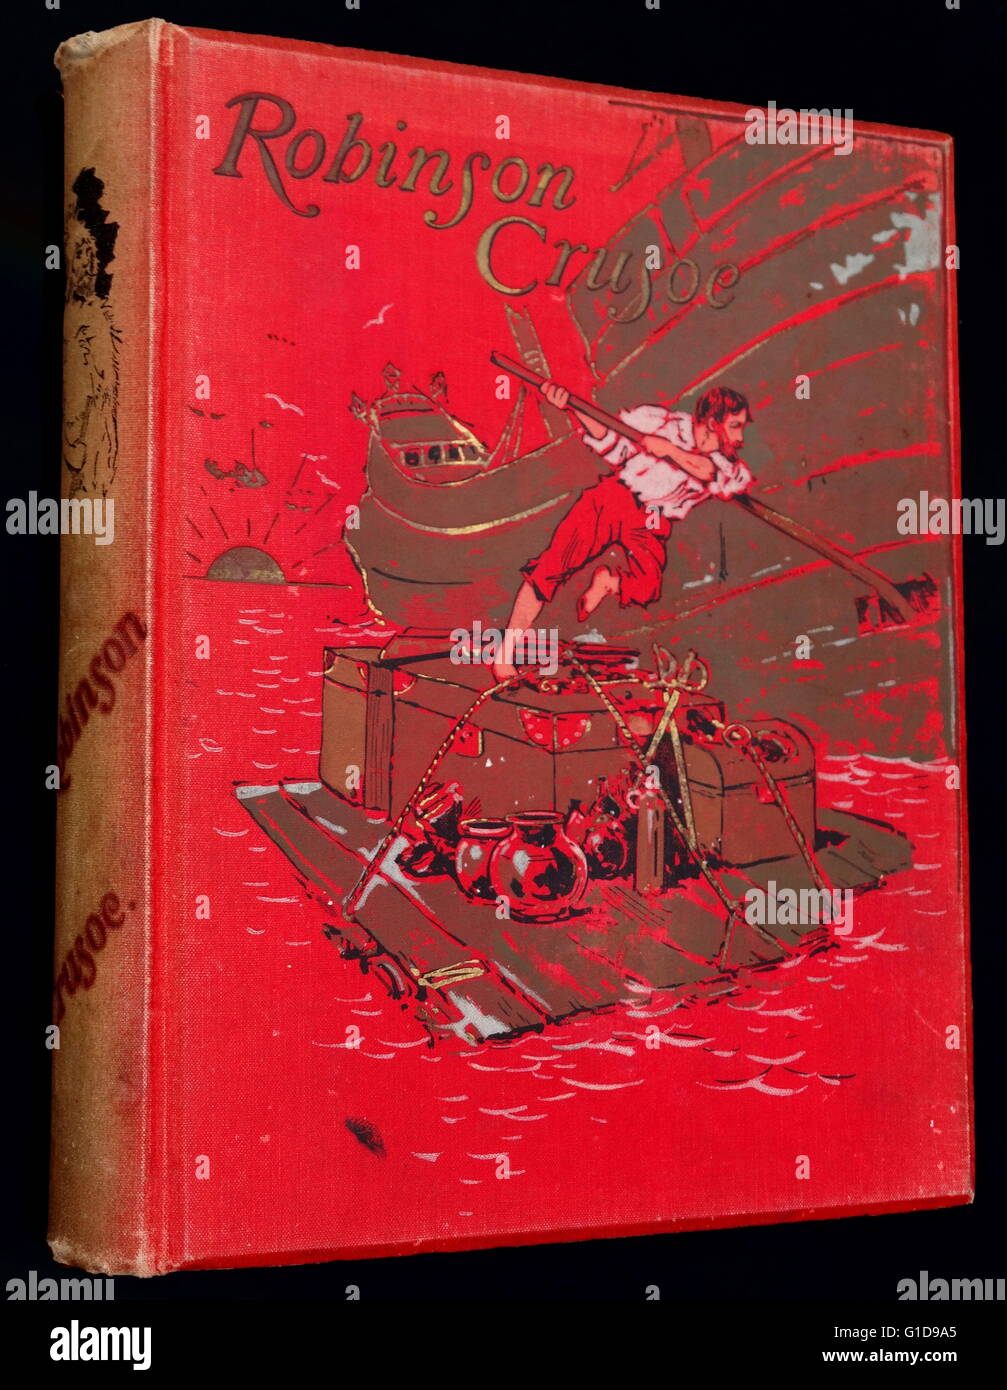 Vordere Abdeckung Abbildung bilden die illustrierte Version von Robinson Crusoe von Daniel Defoe 1895. Robin Crusoe erzählt die Geschichte eines Explorer-Schiff zerstört, auf einer Insel, wo er viele Herausforderungen zu überleben muss. Stockfoto